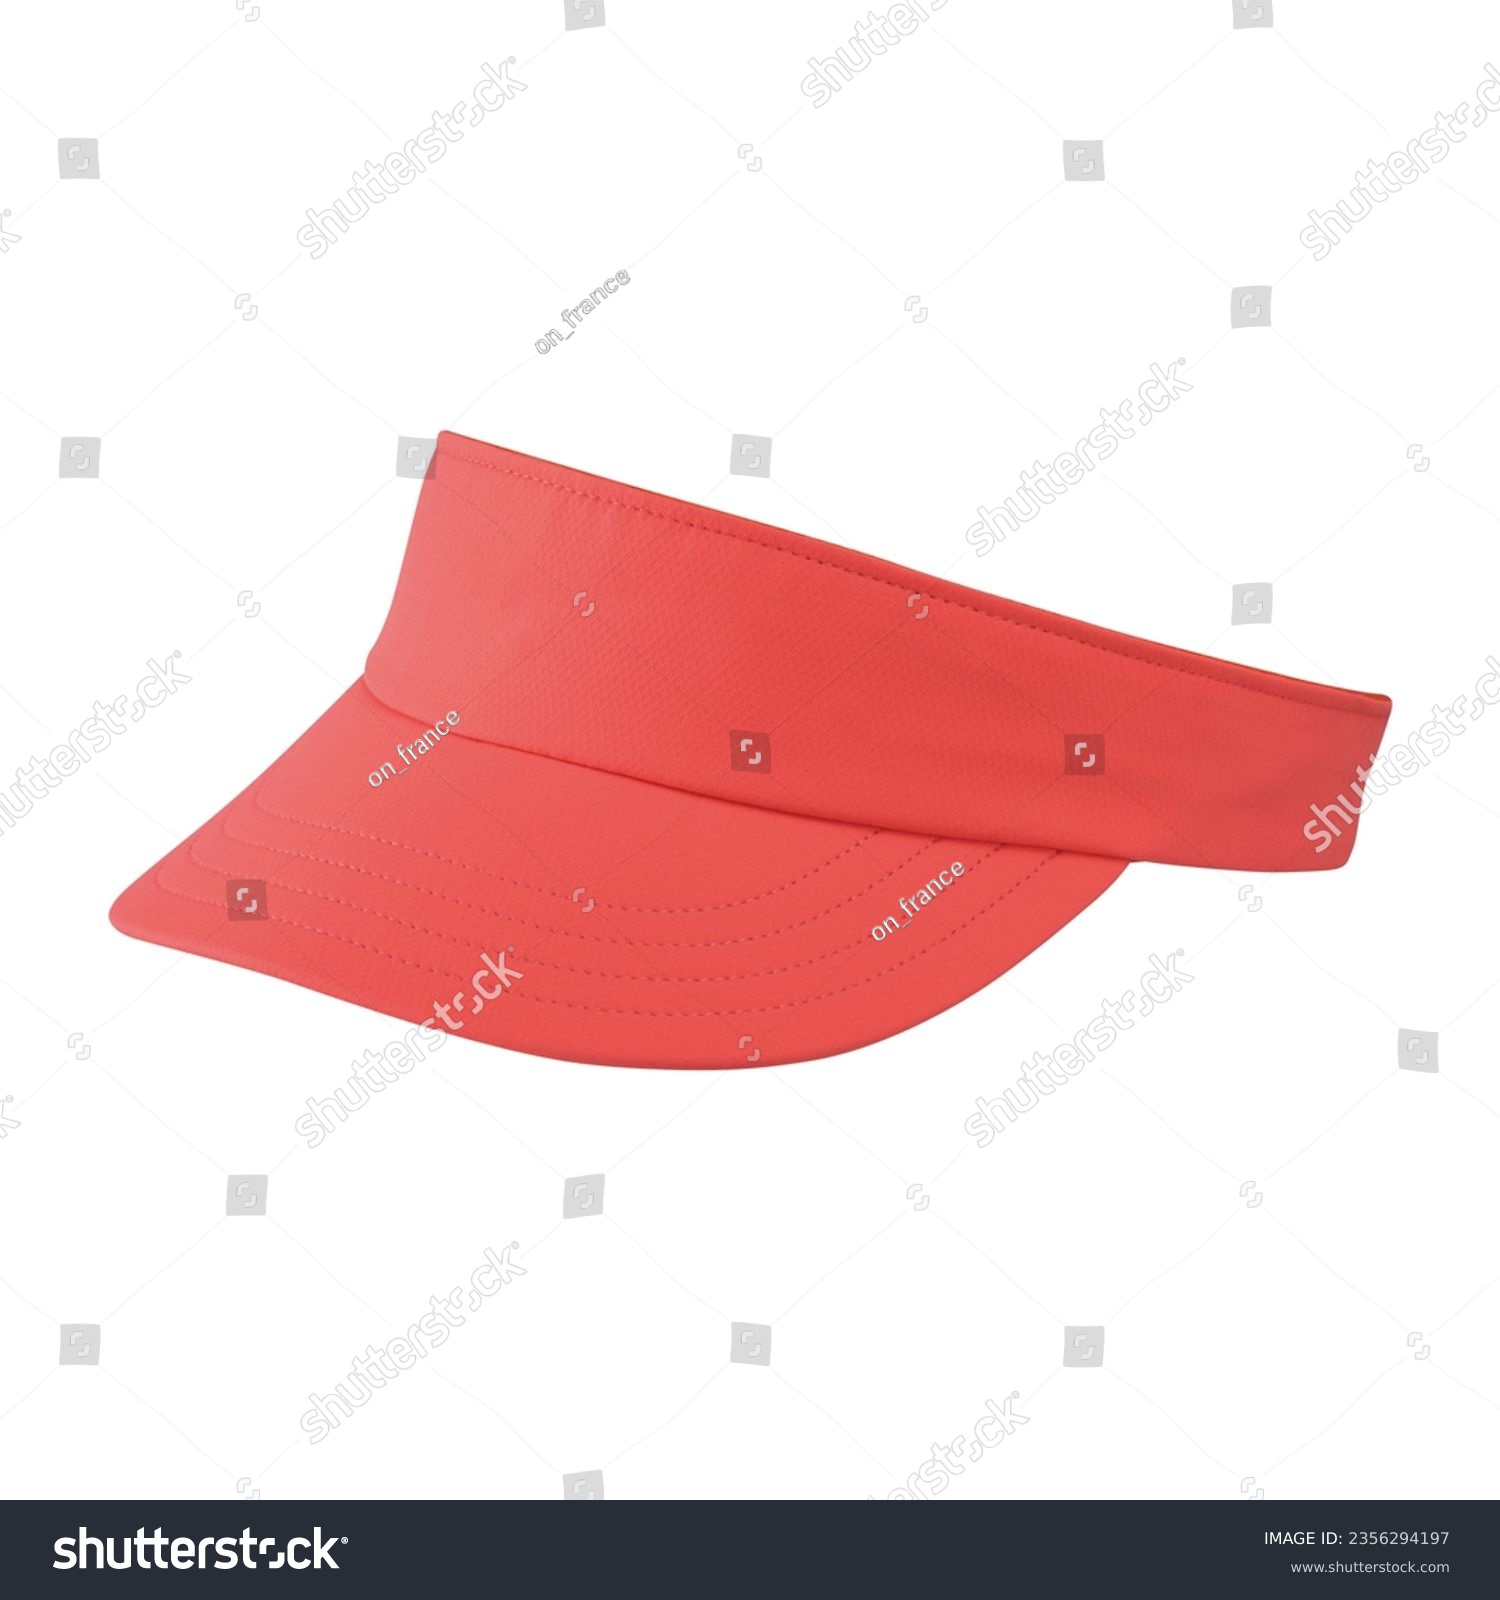 Pink visor cap isolated on white background.
Mockup orange visor baseball cap for design.
Pink visor running hat.
Visor golf hat.
Orange hat. Hip hop cap. #2356294197